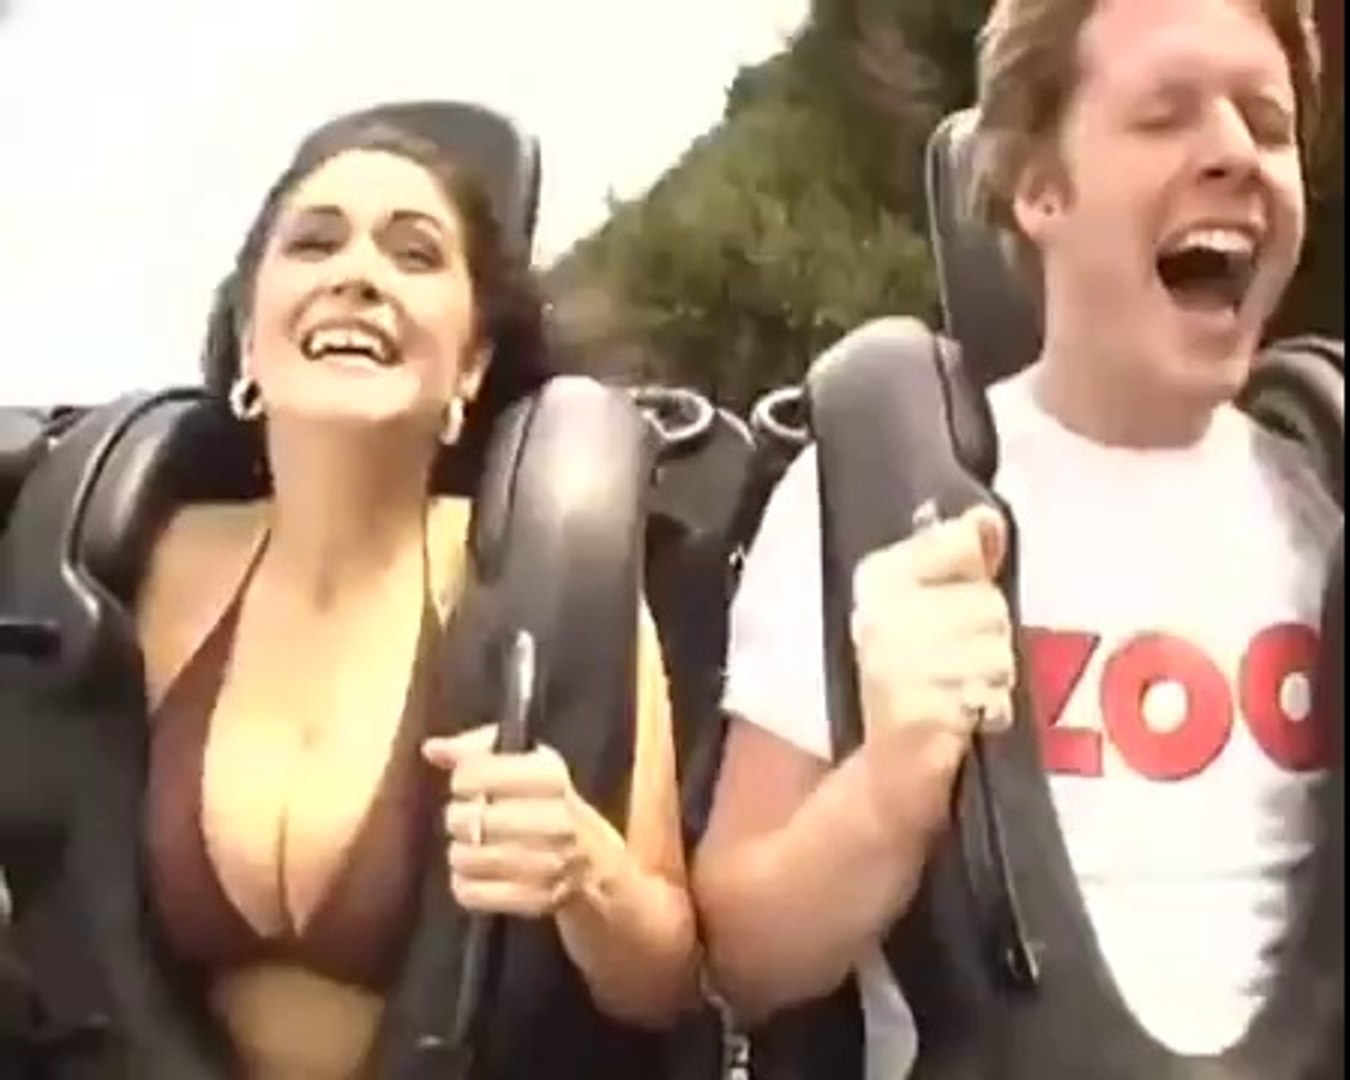 Roller coaster boobs